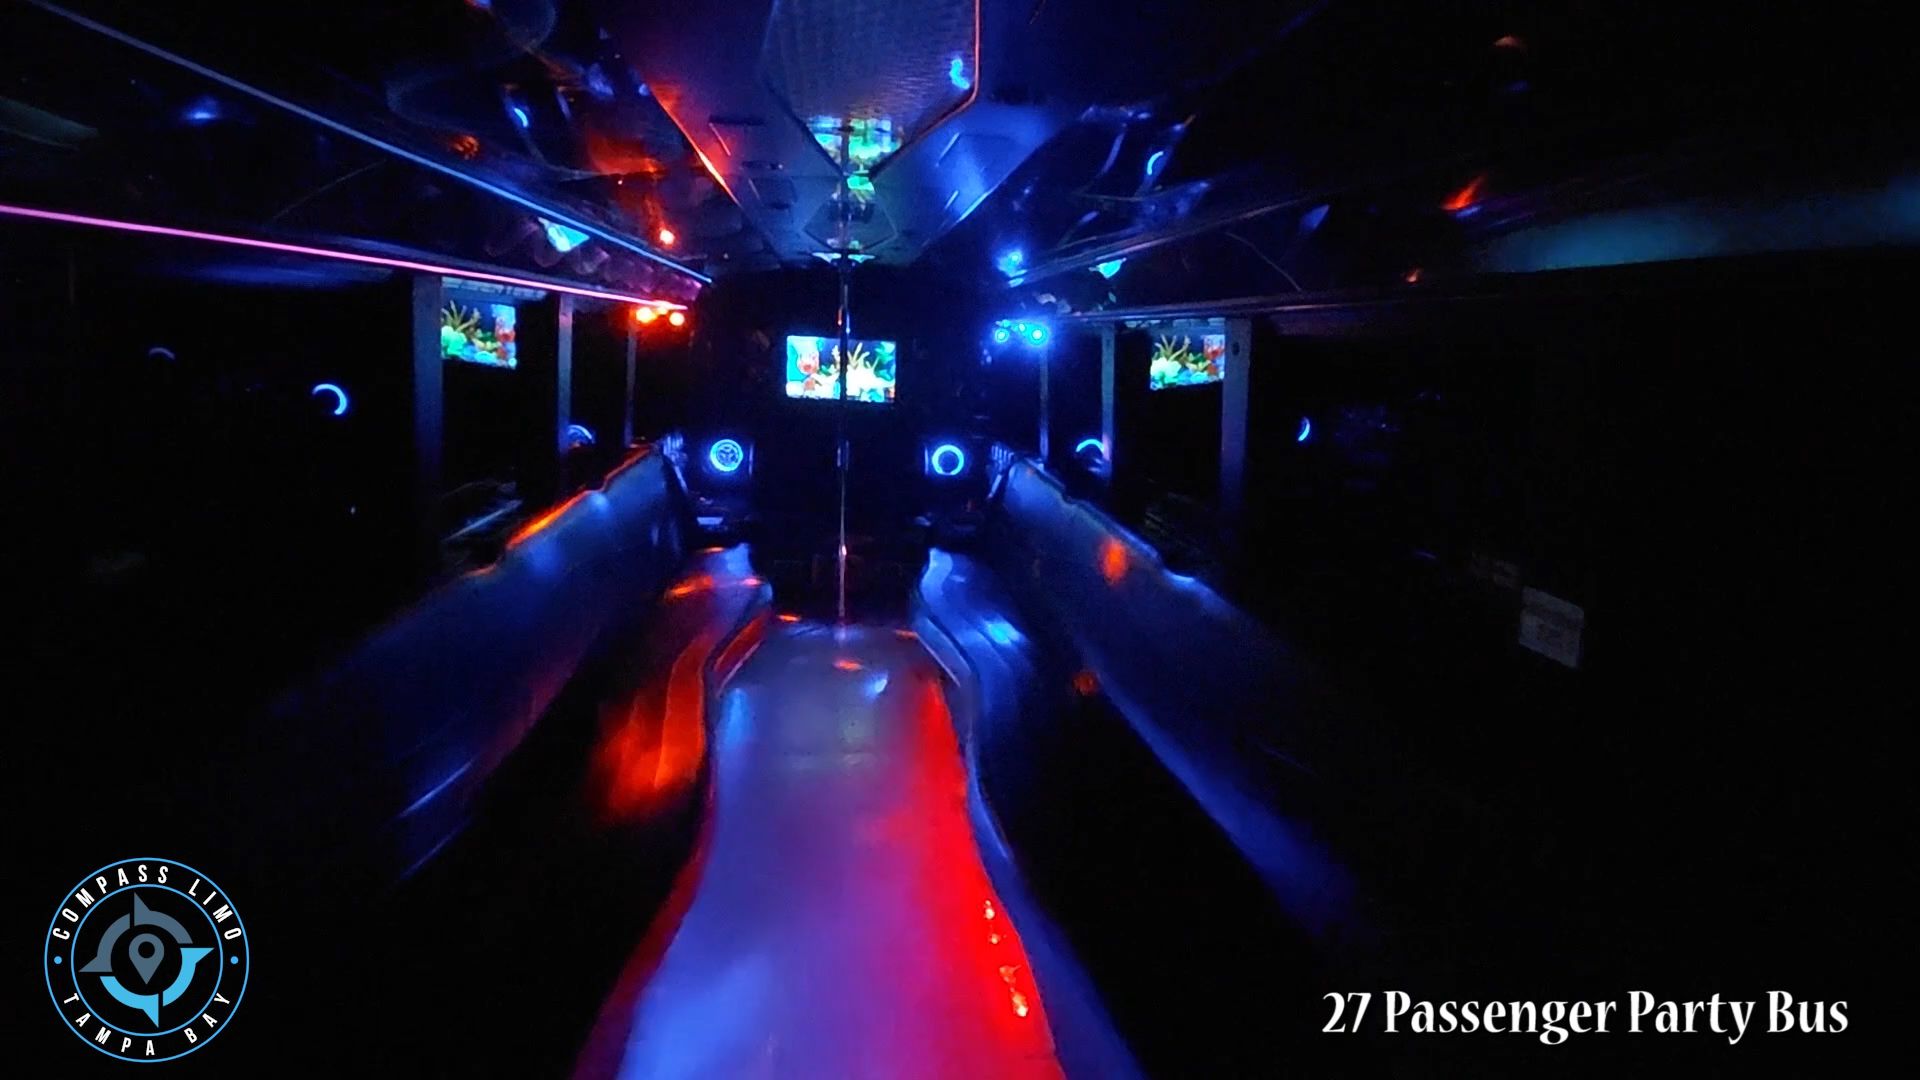 27 Passenger Party Bus